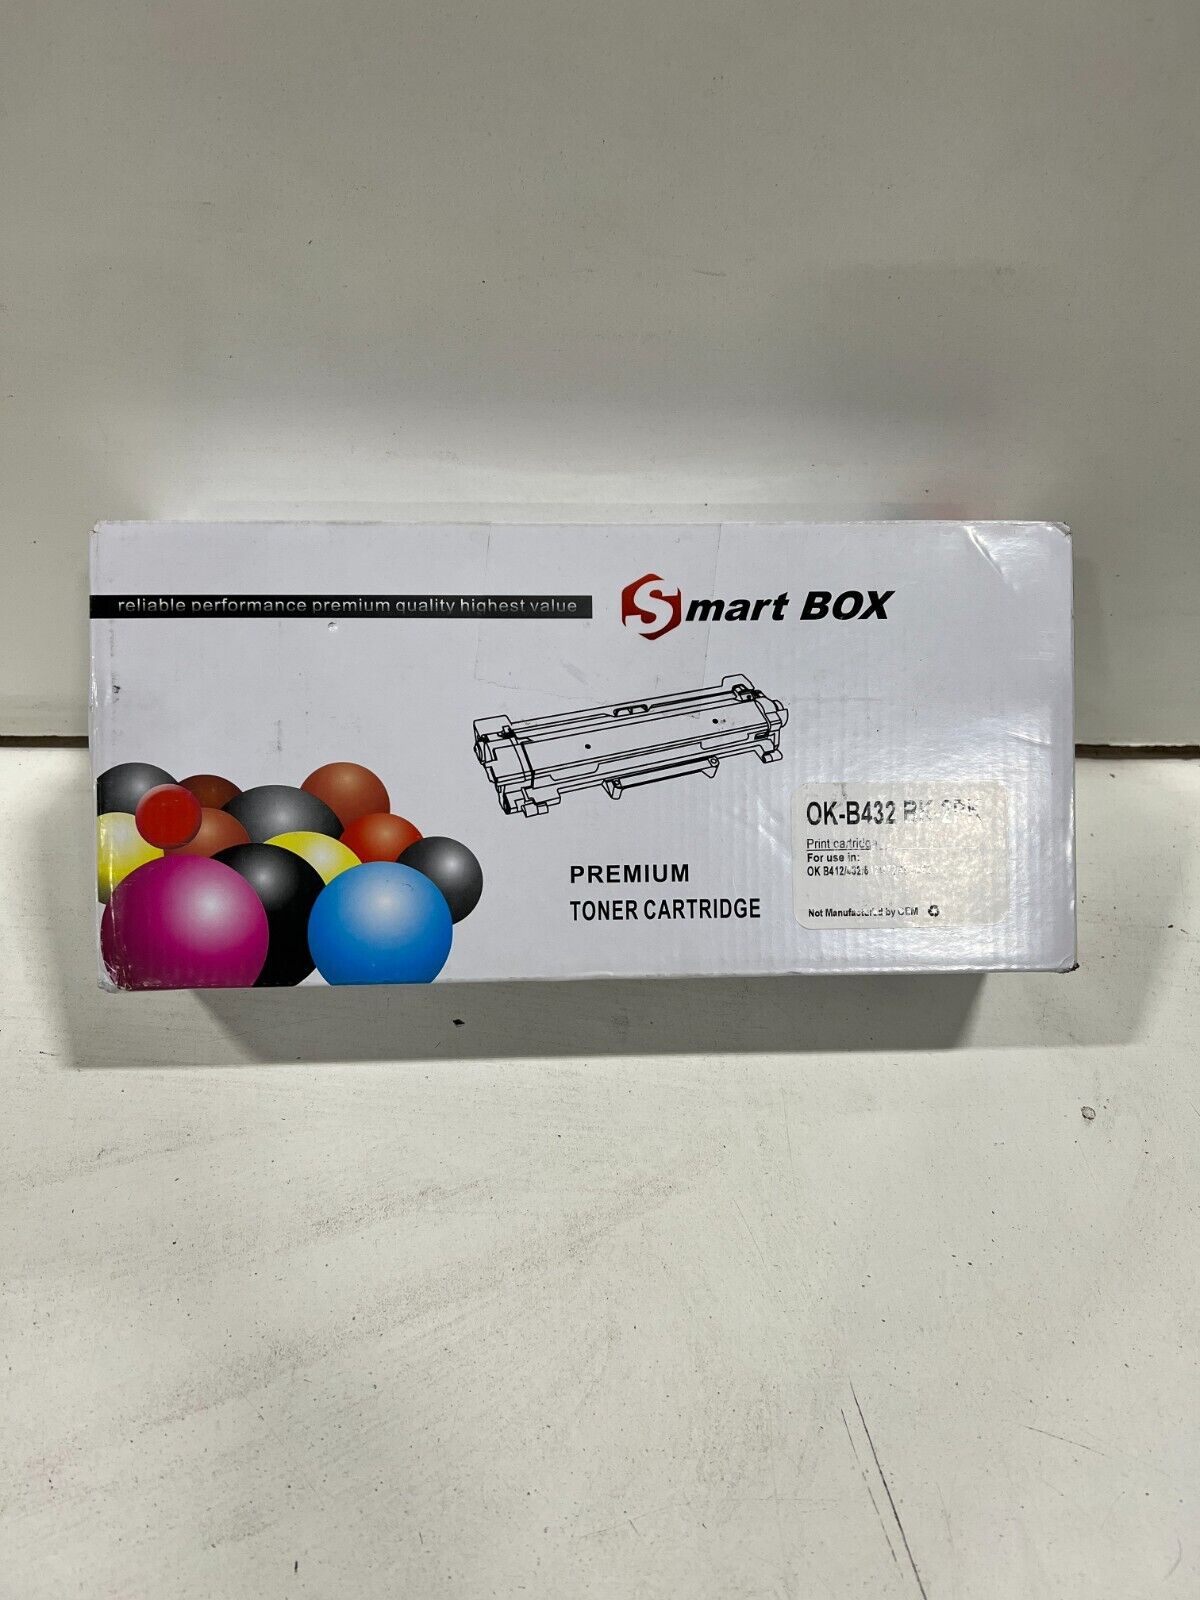 Smartbox Premium Toner Cartridge